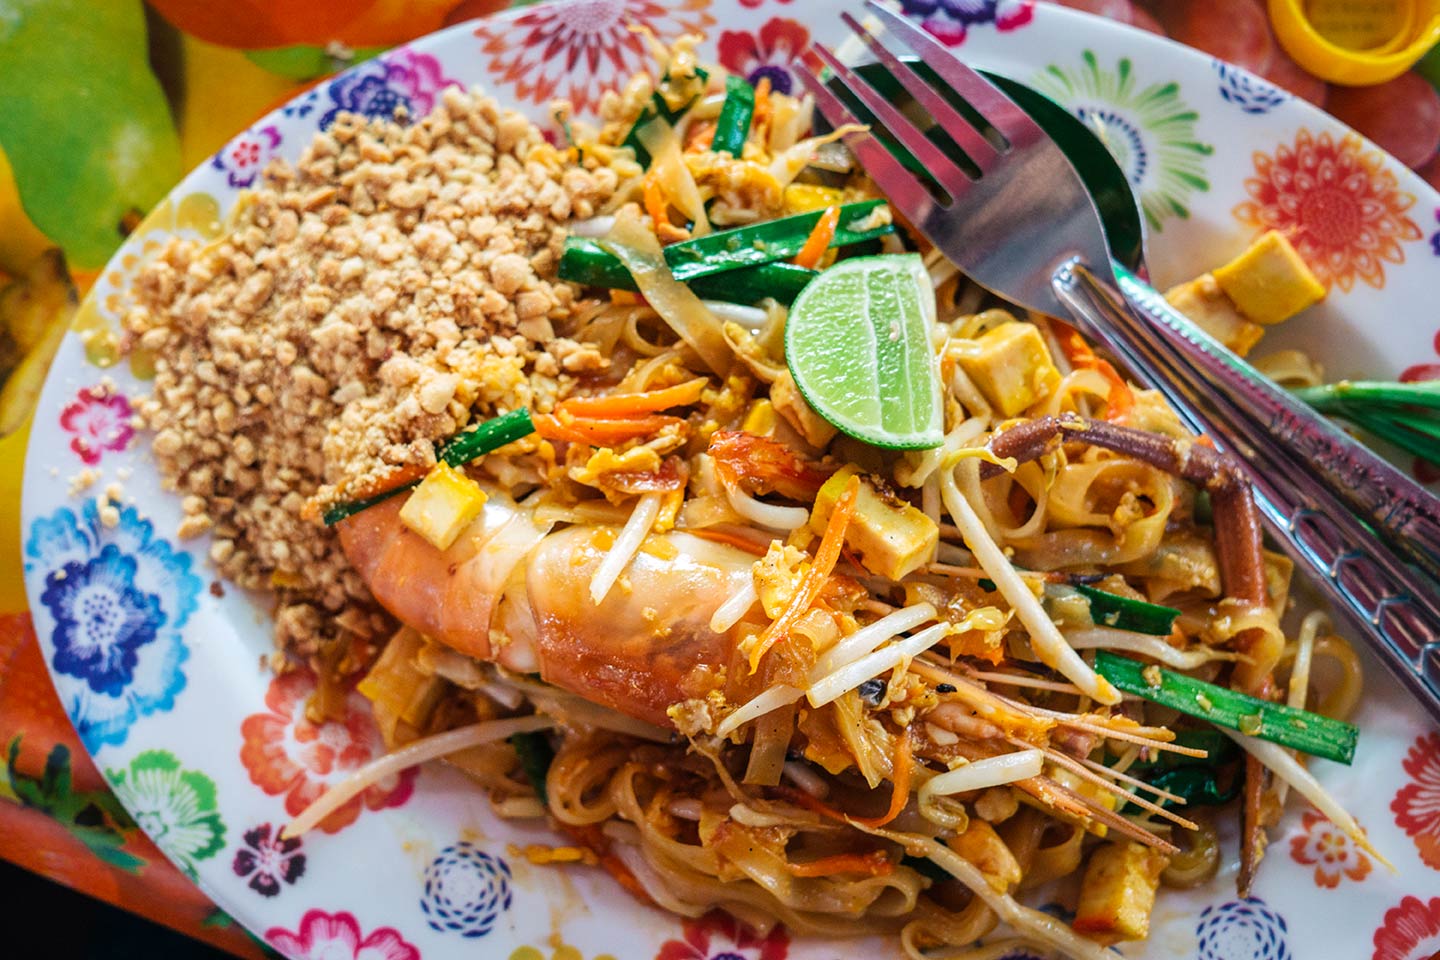  Pad Thai noodles at Chatuchak Market Bangkok Tailândia